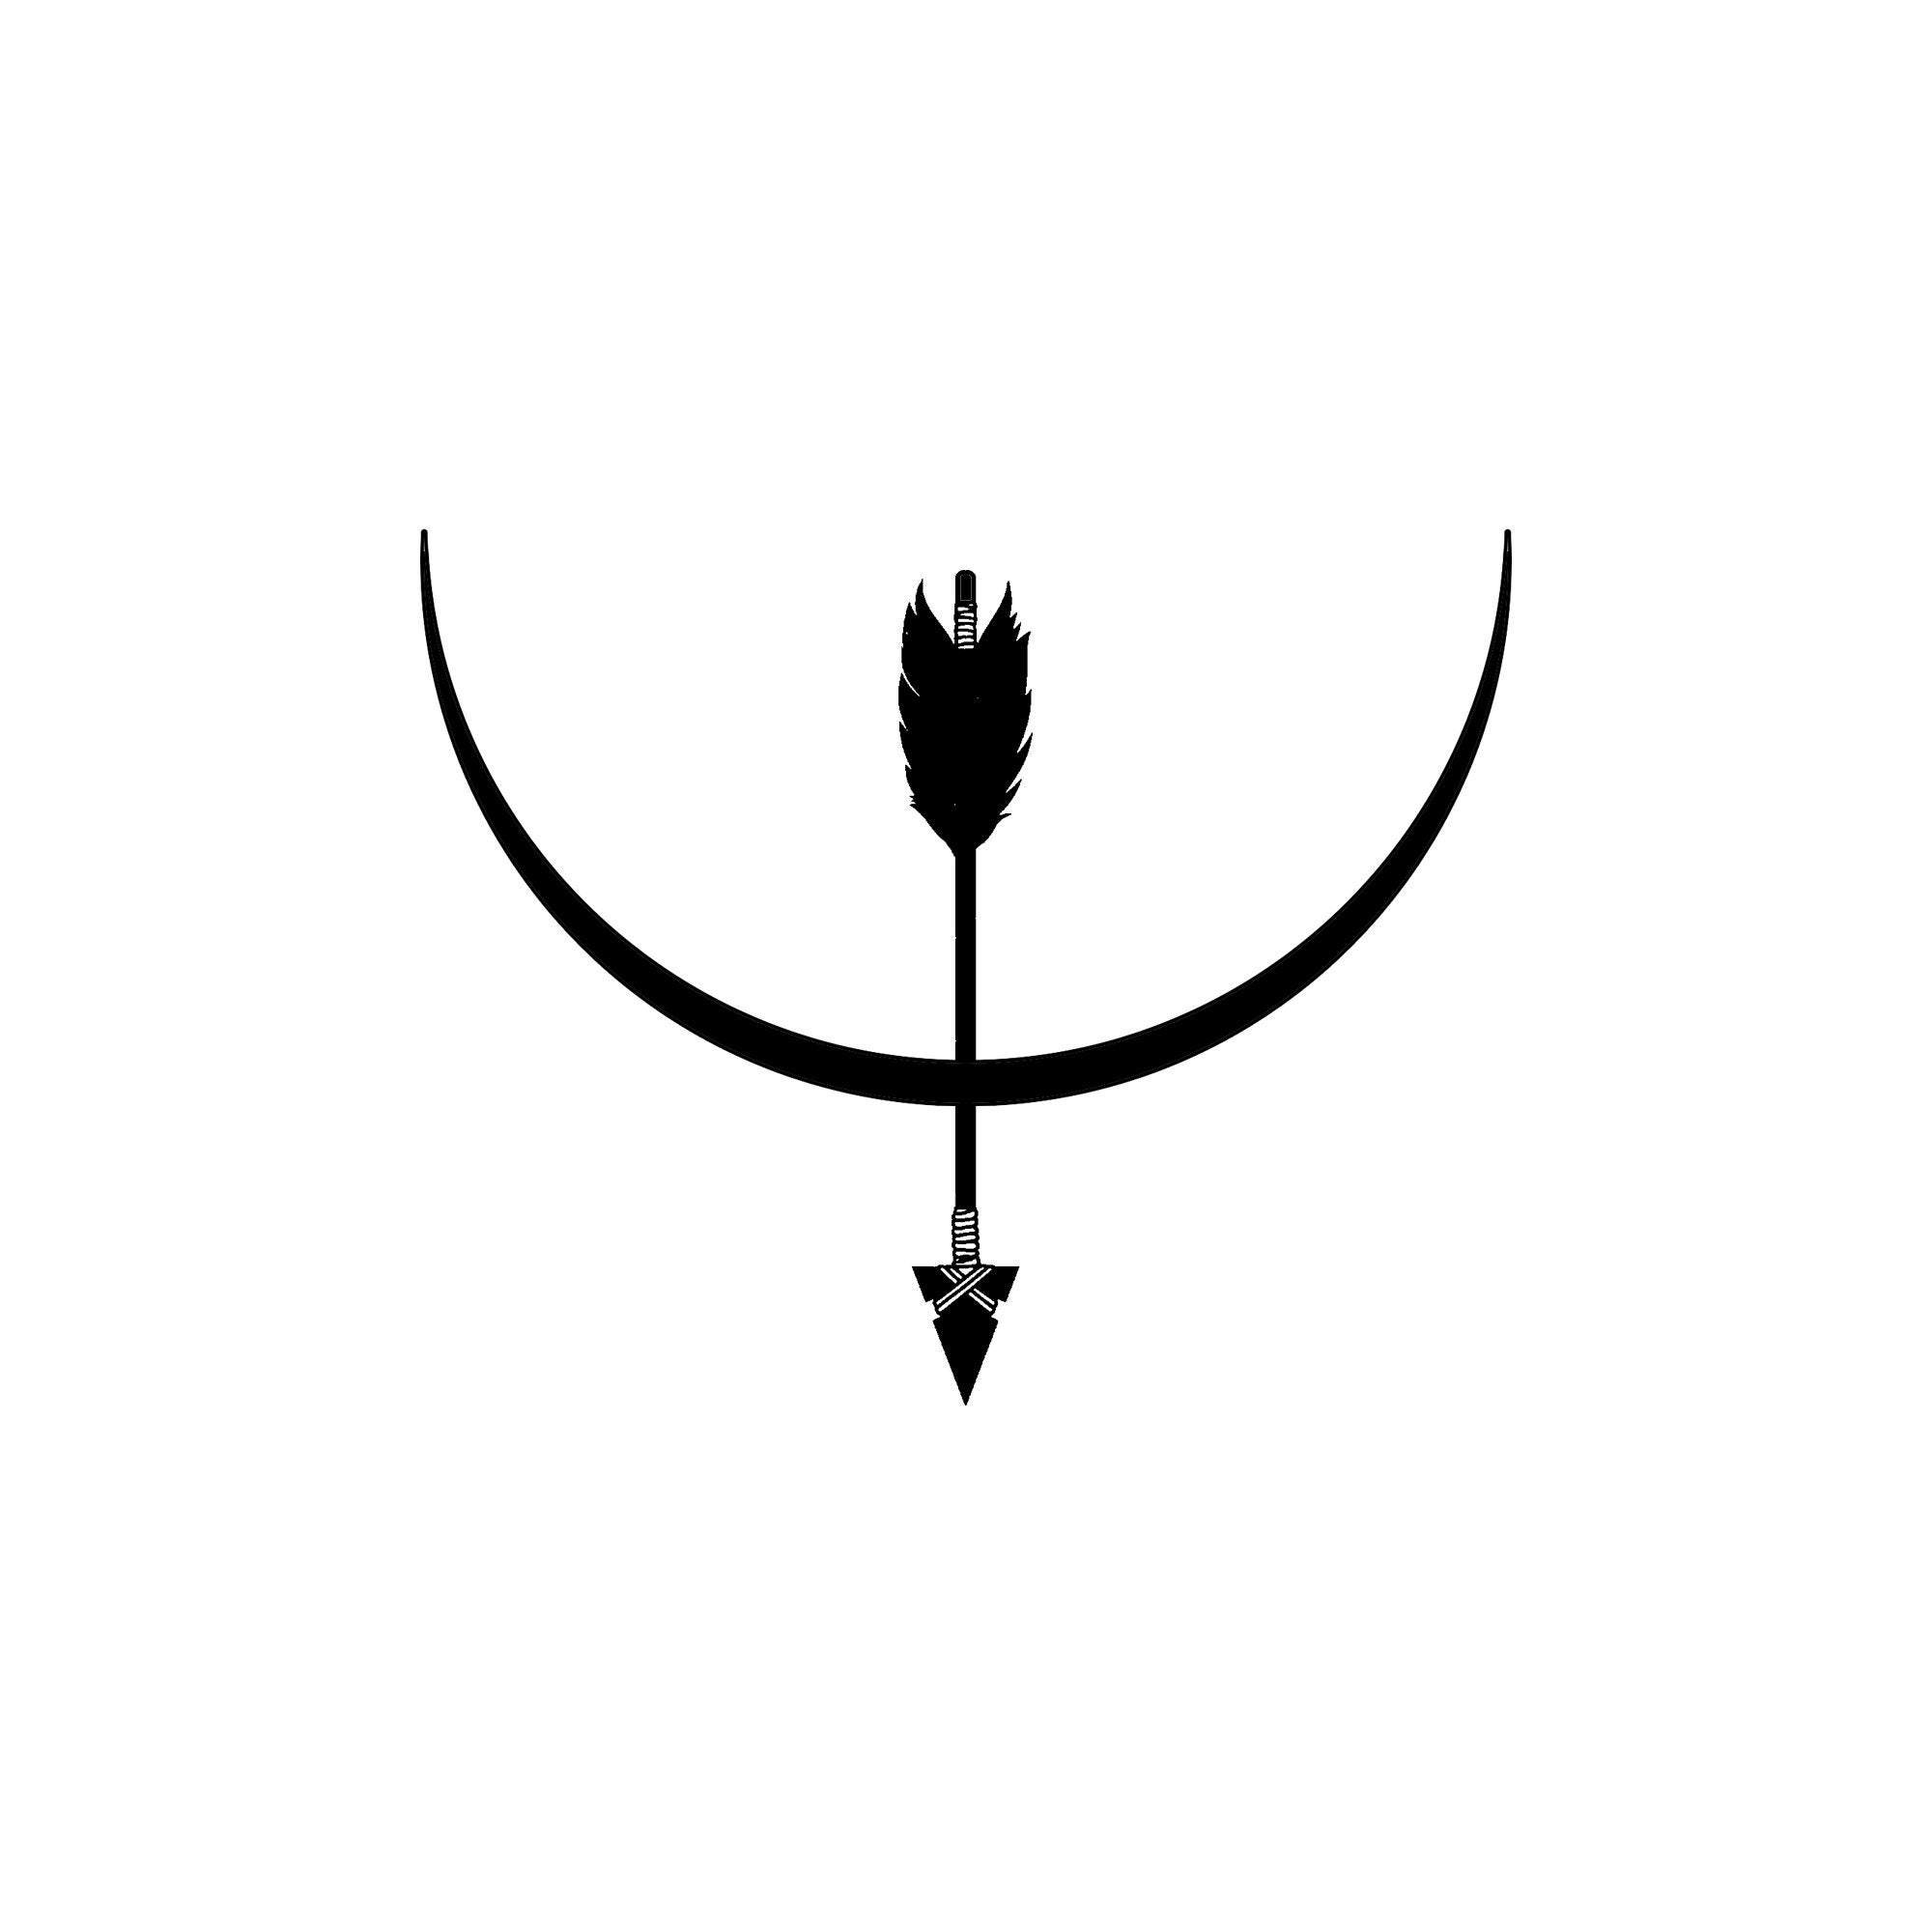 world of warcraft alliance logo black and white